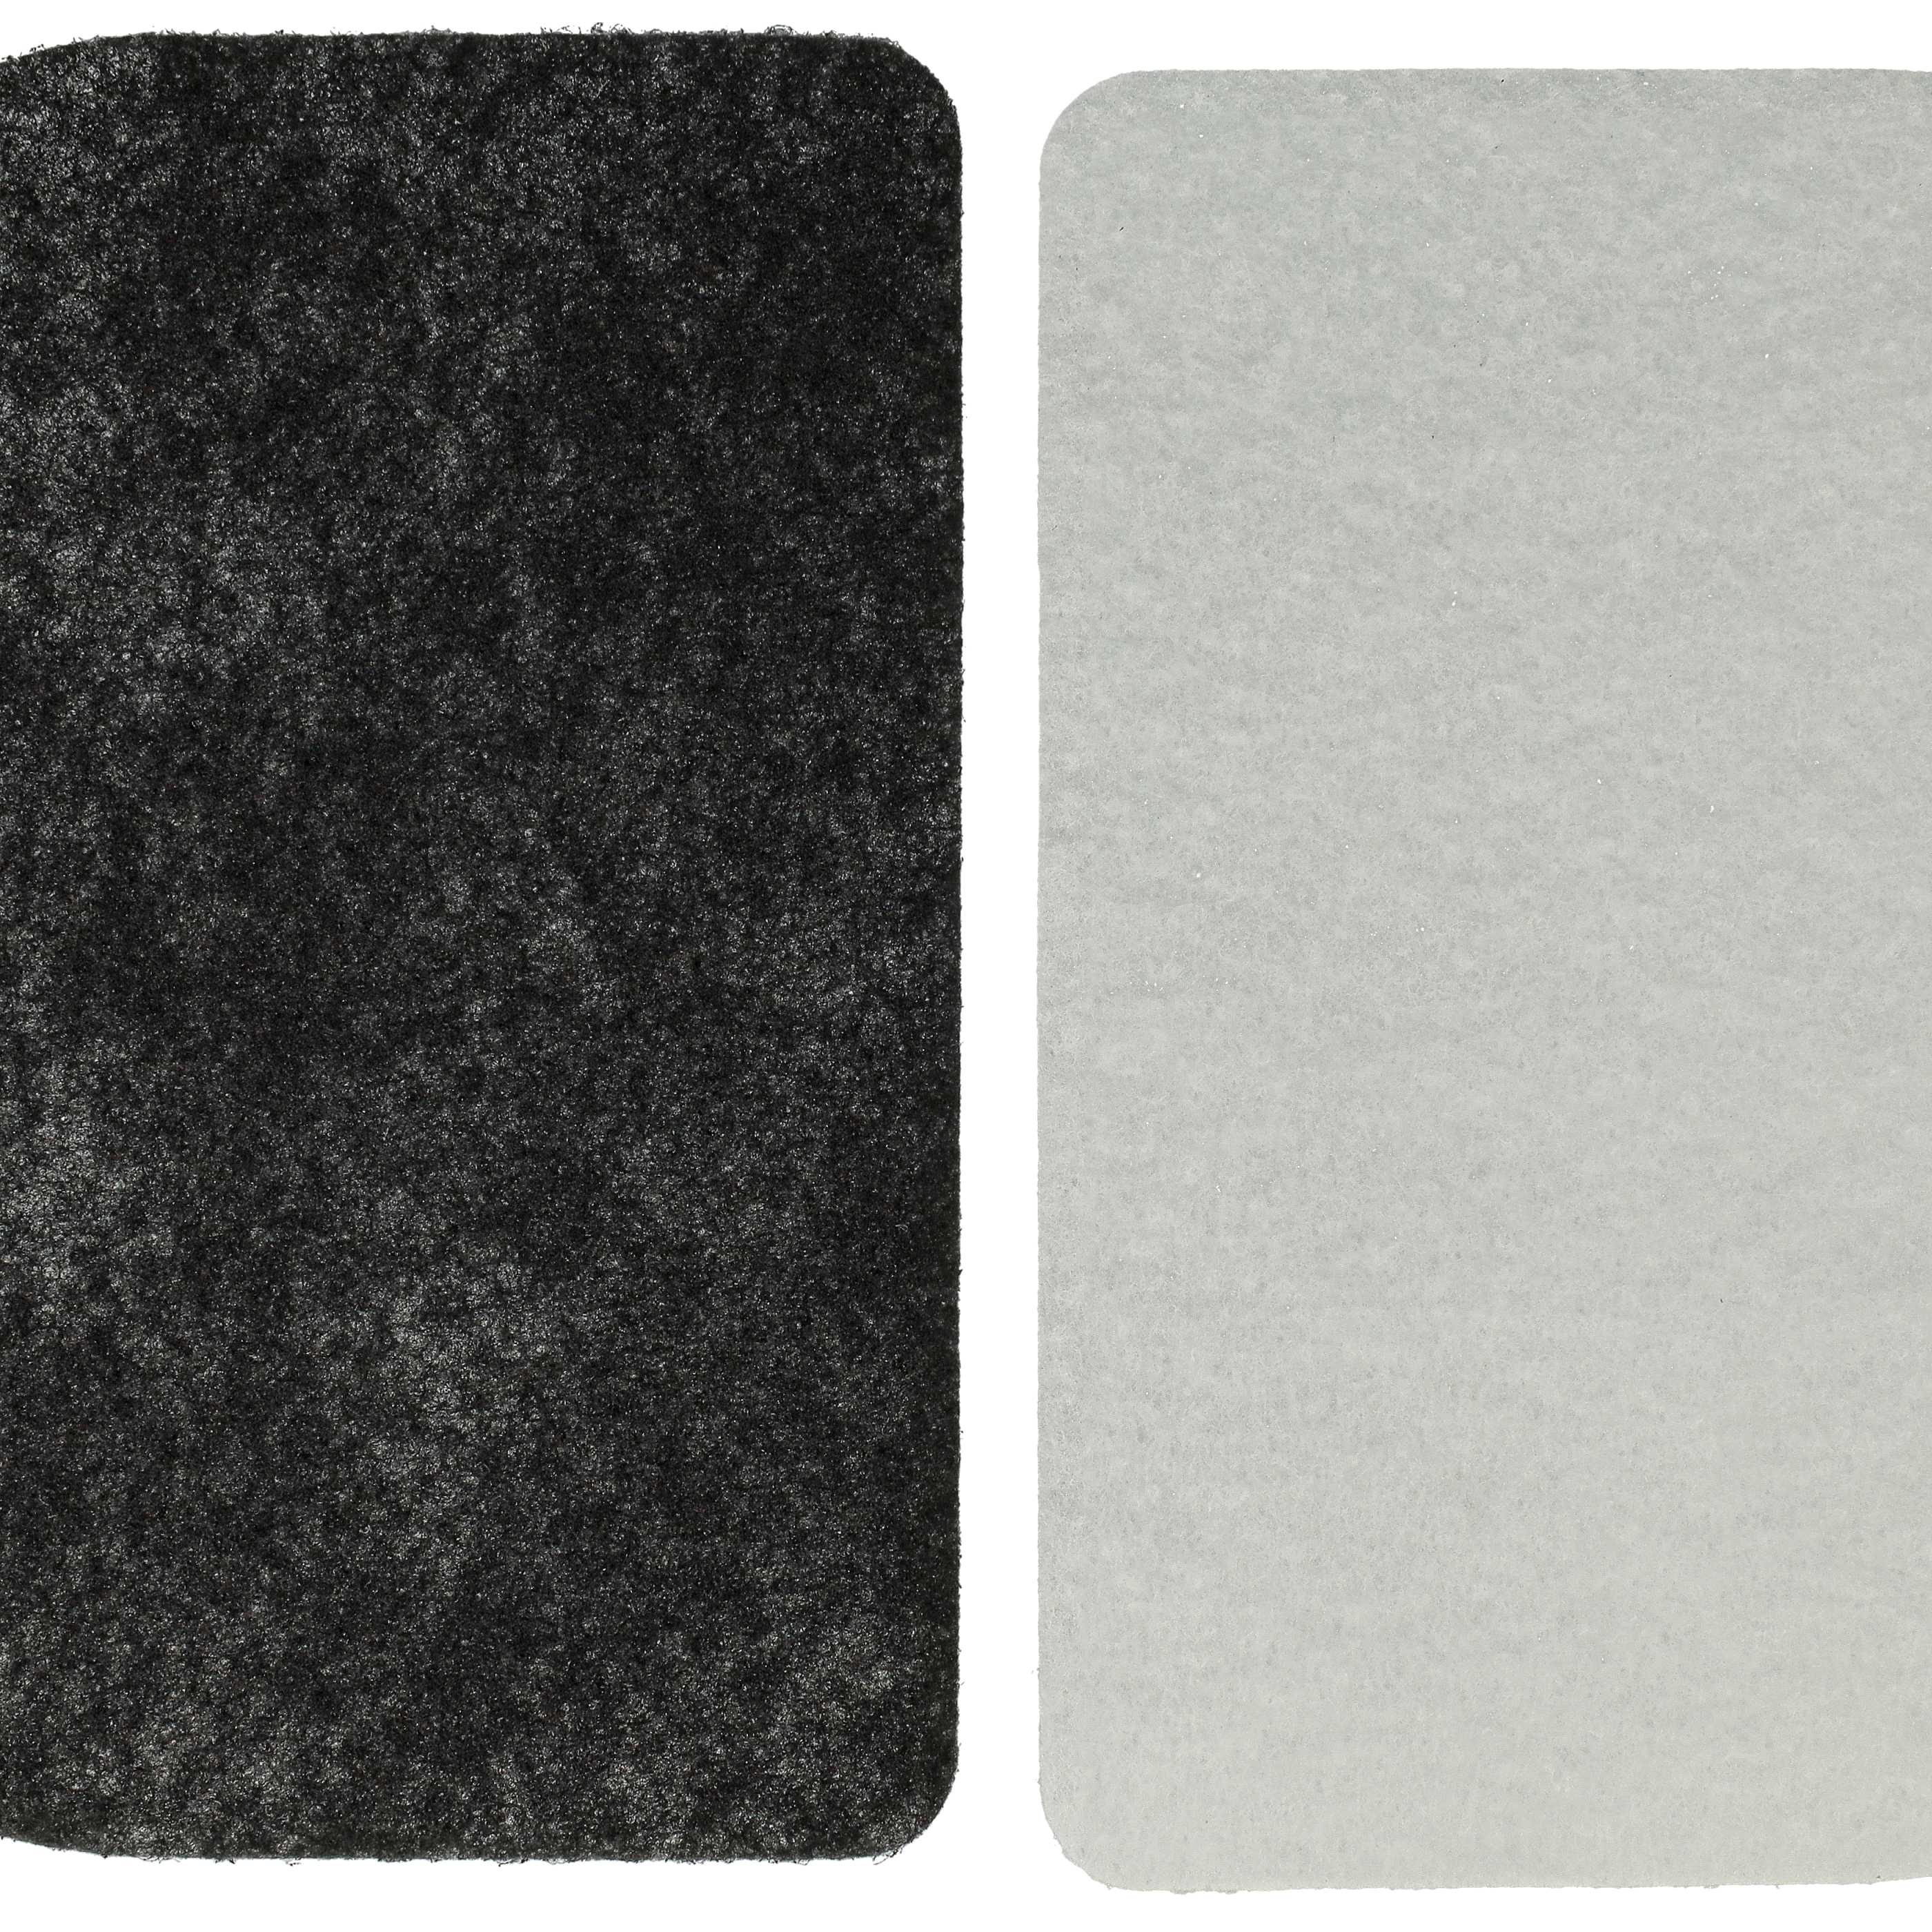 3x filtre à charbon, 6x filtre papier, 3x filtre à graisses remplace De Longhi 5525101500 friteuse